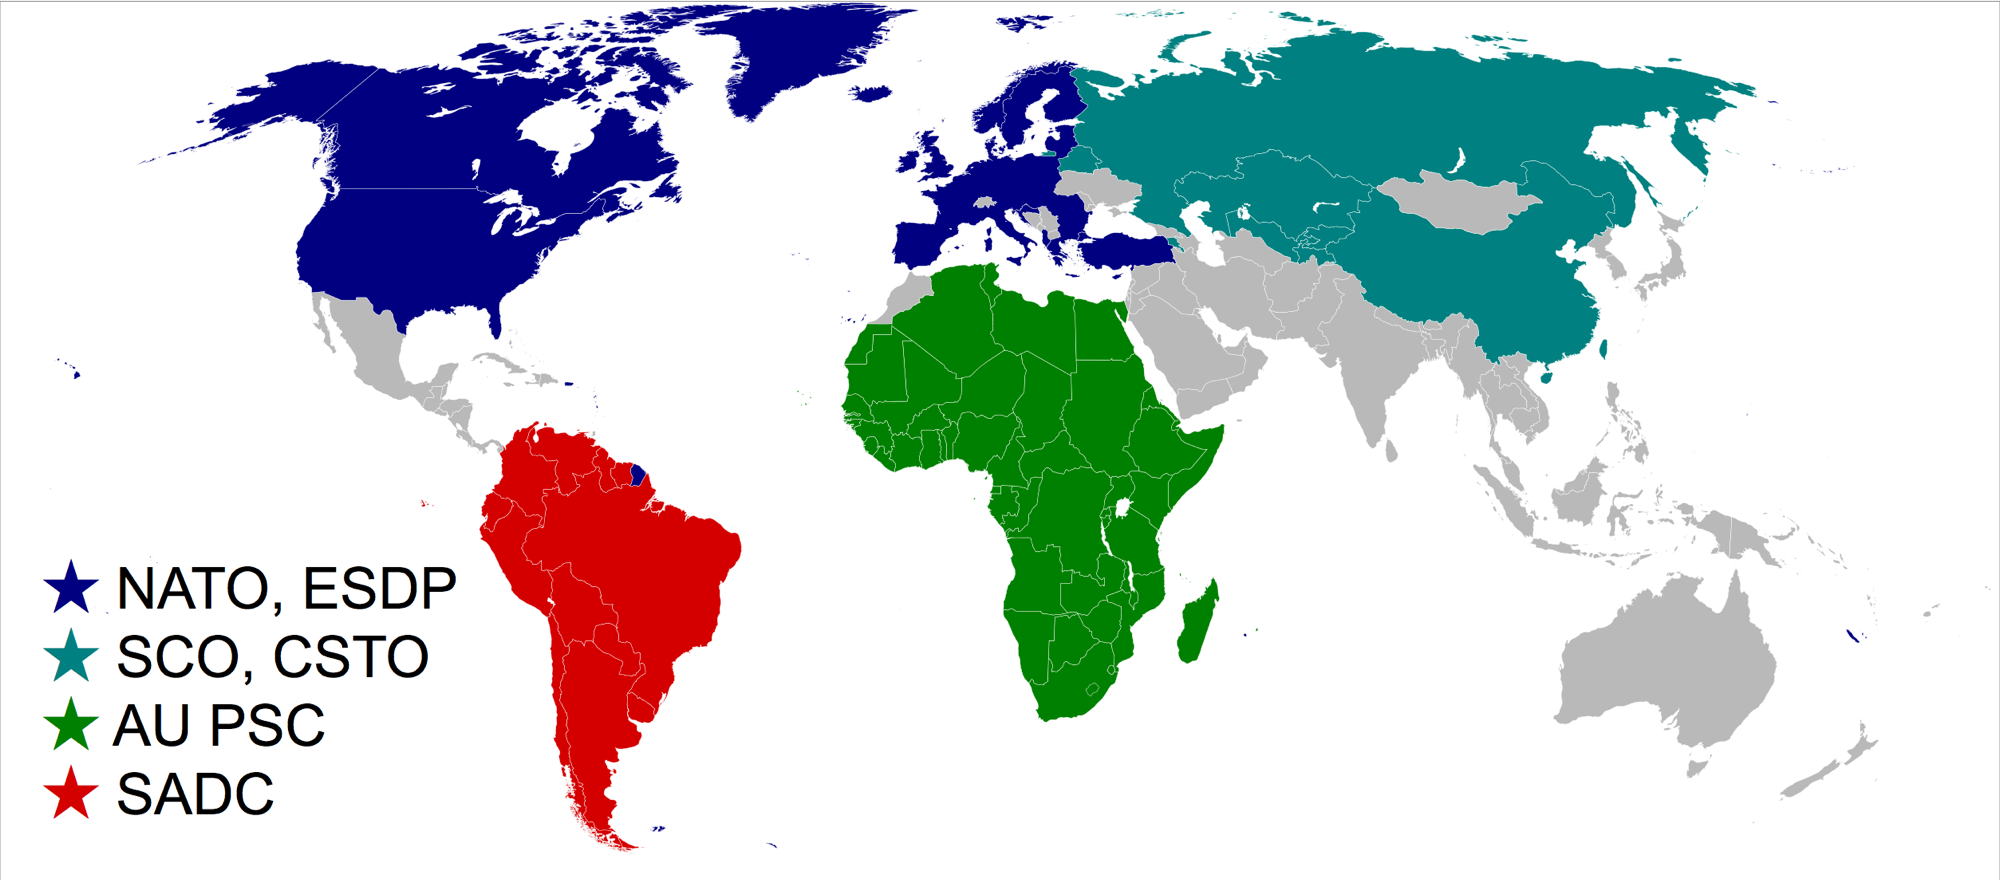 Organizaciones regionales y alianzas militares en el Mundo 2008